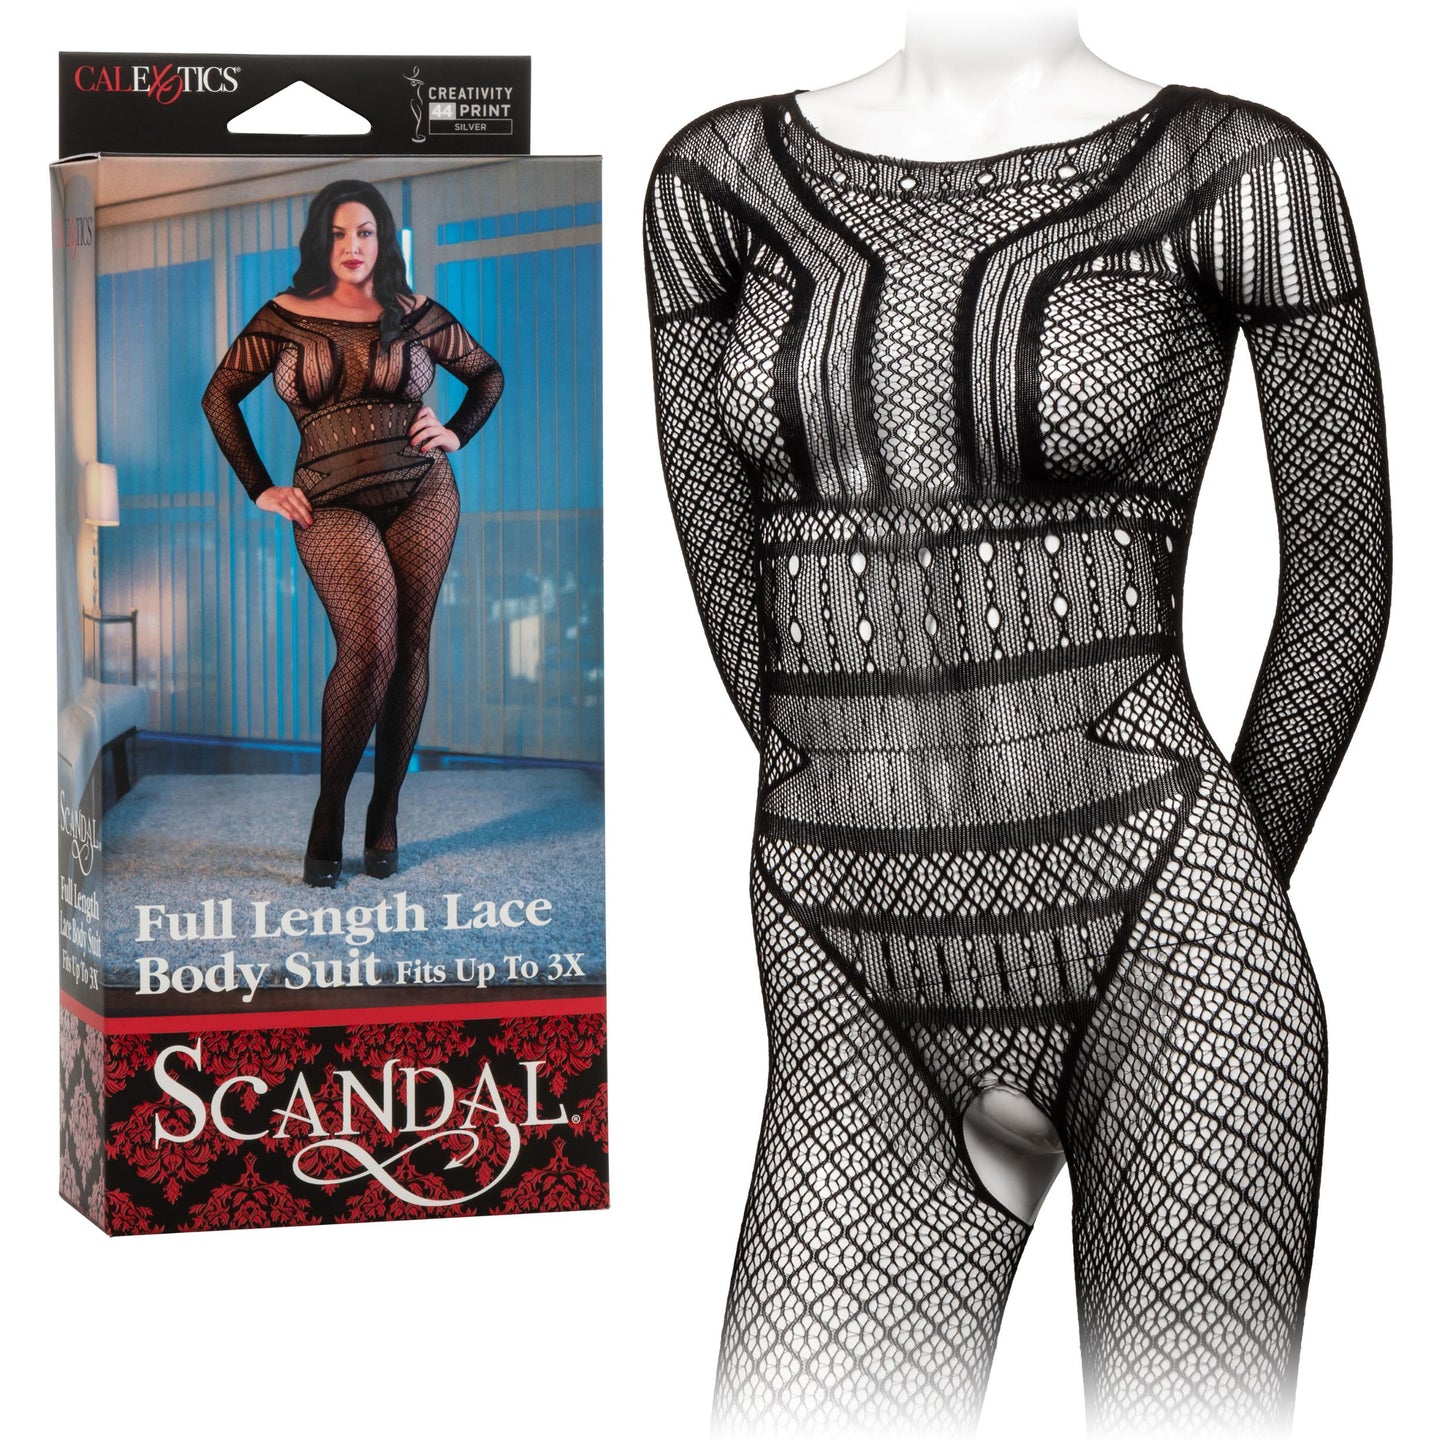 Scandal Plus Size Full Length Lace Body Suit - Plus Size - Black